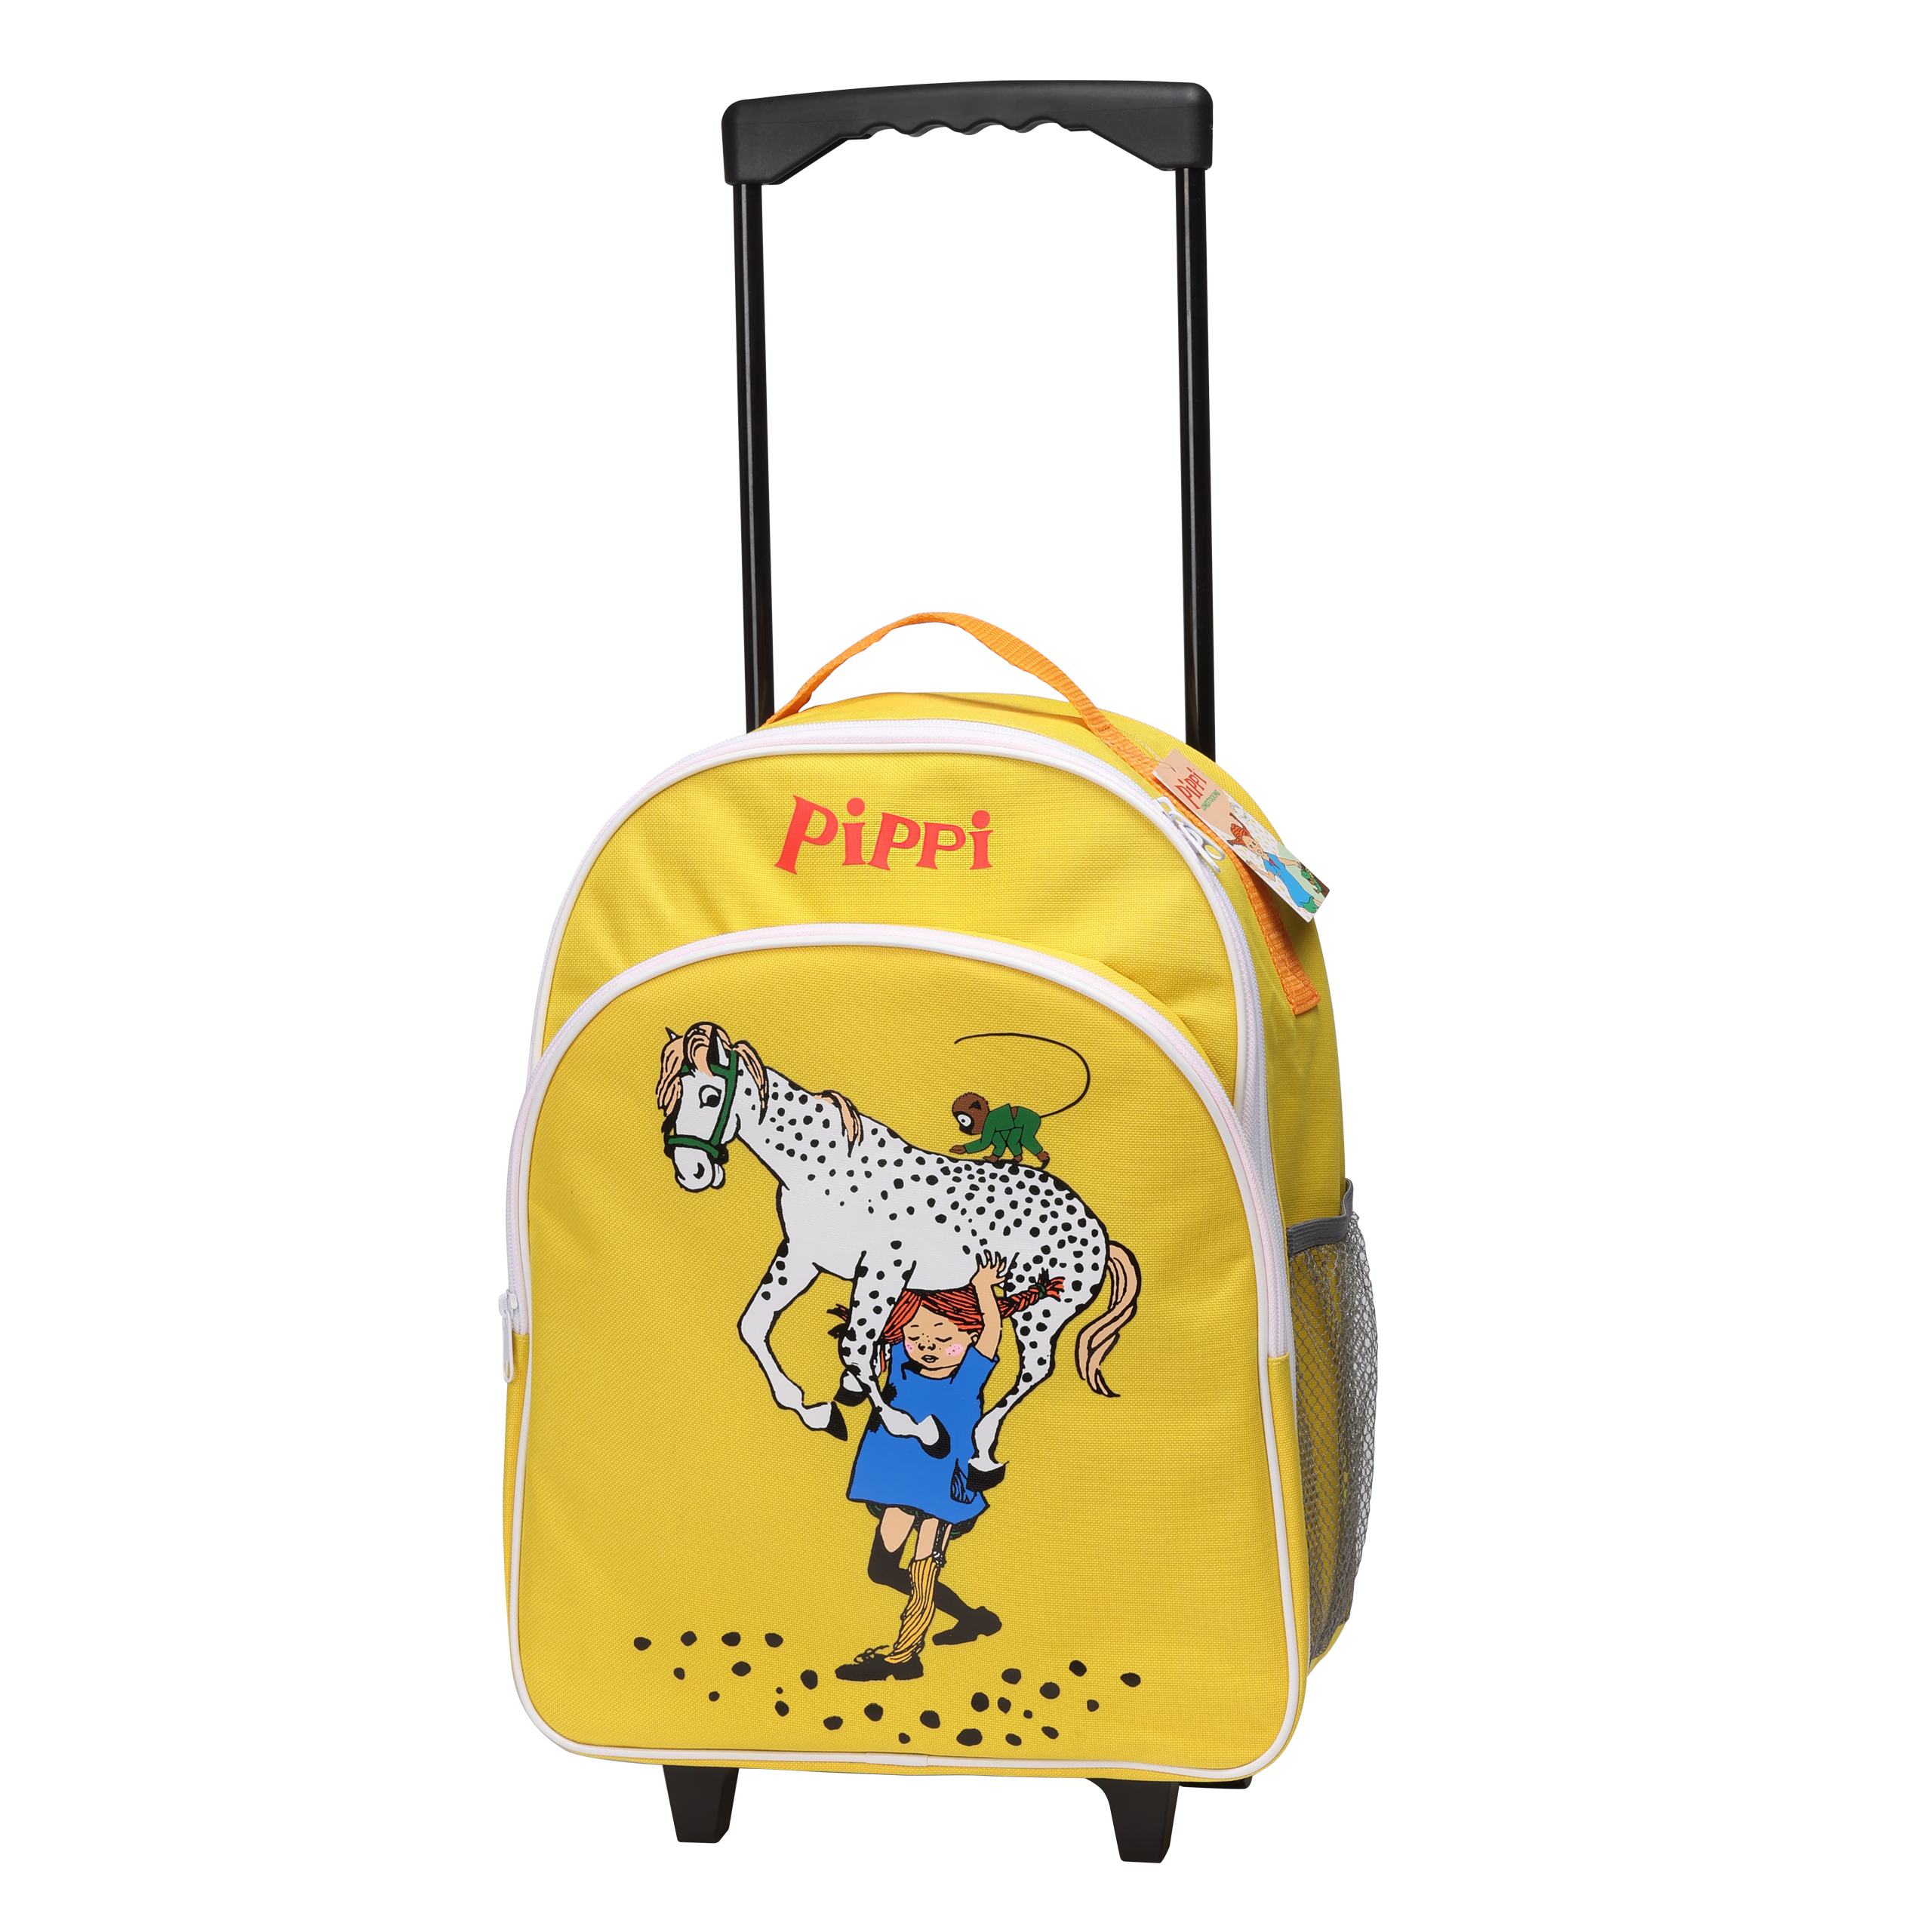 Pippi Longstocking peppi pitkätossu lasten laukku matkalaukku keltainen